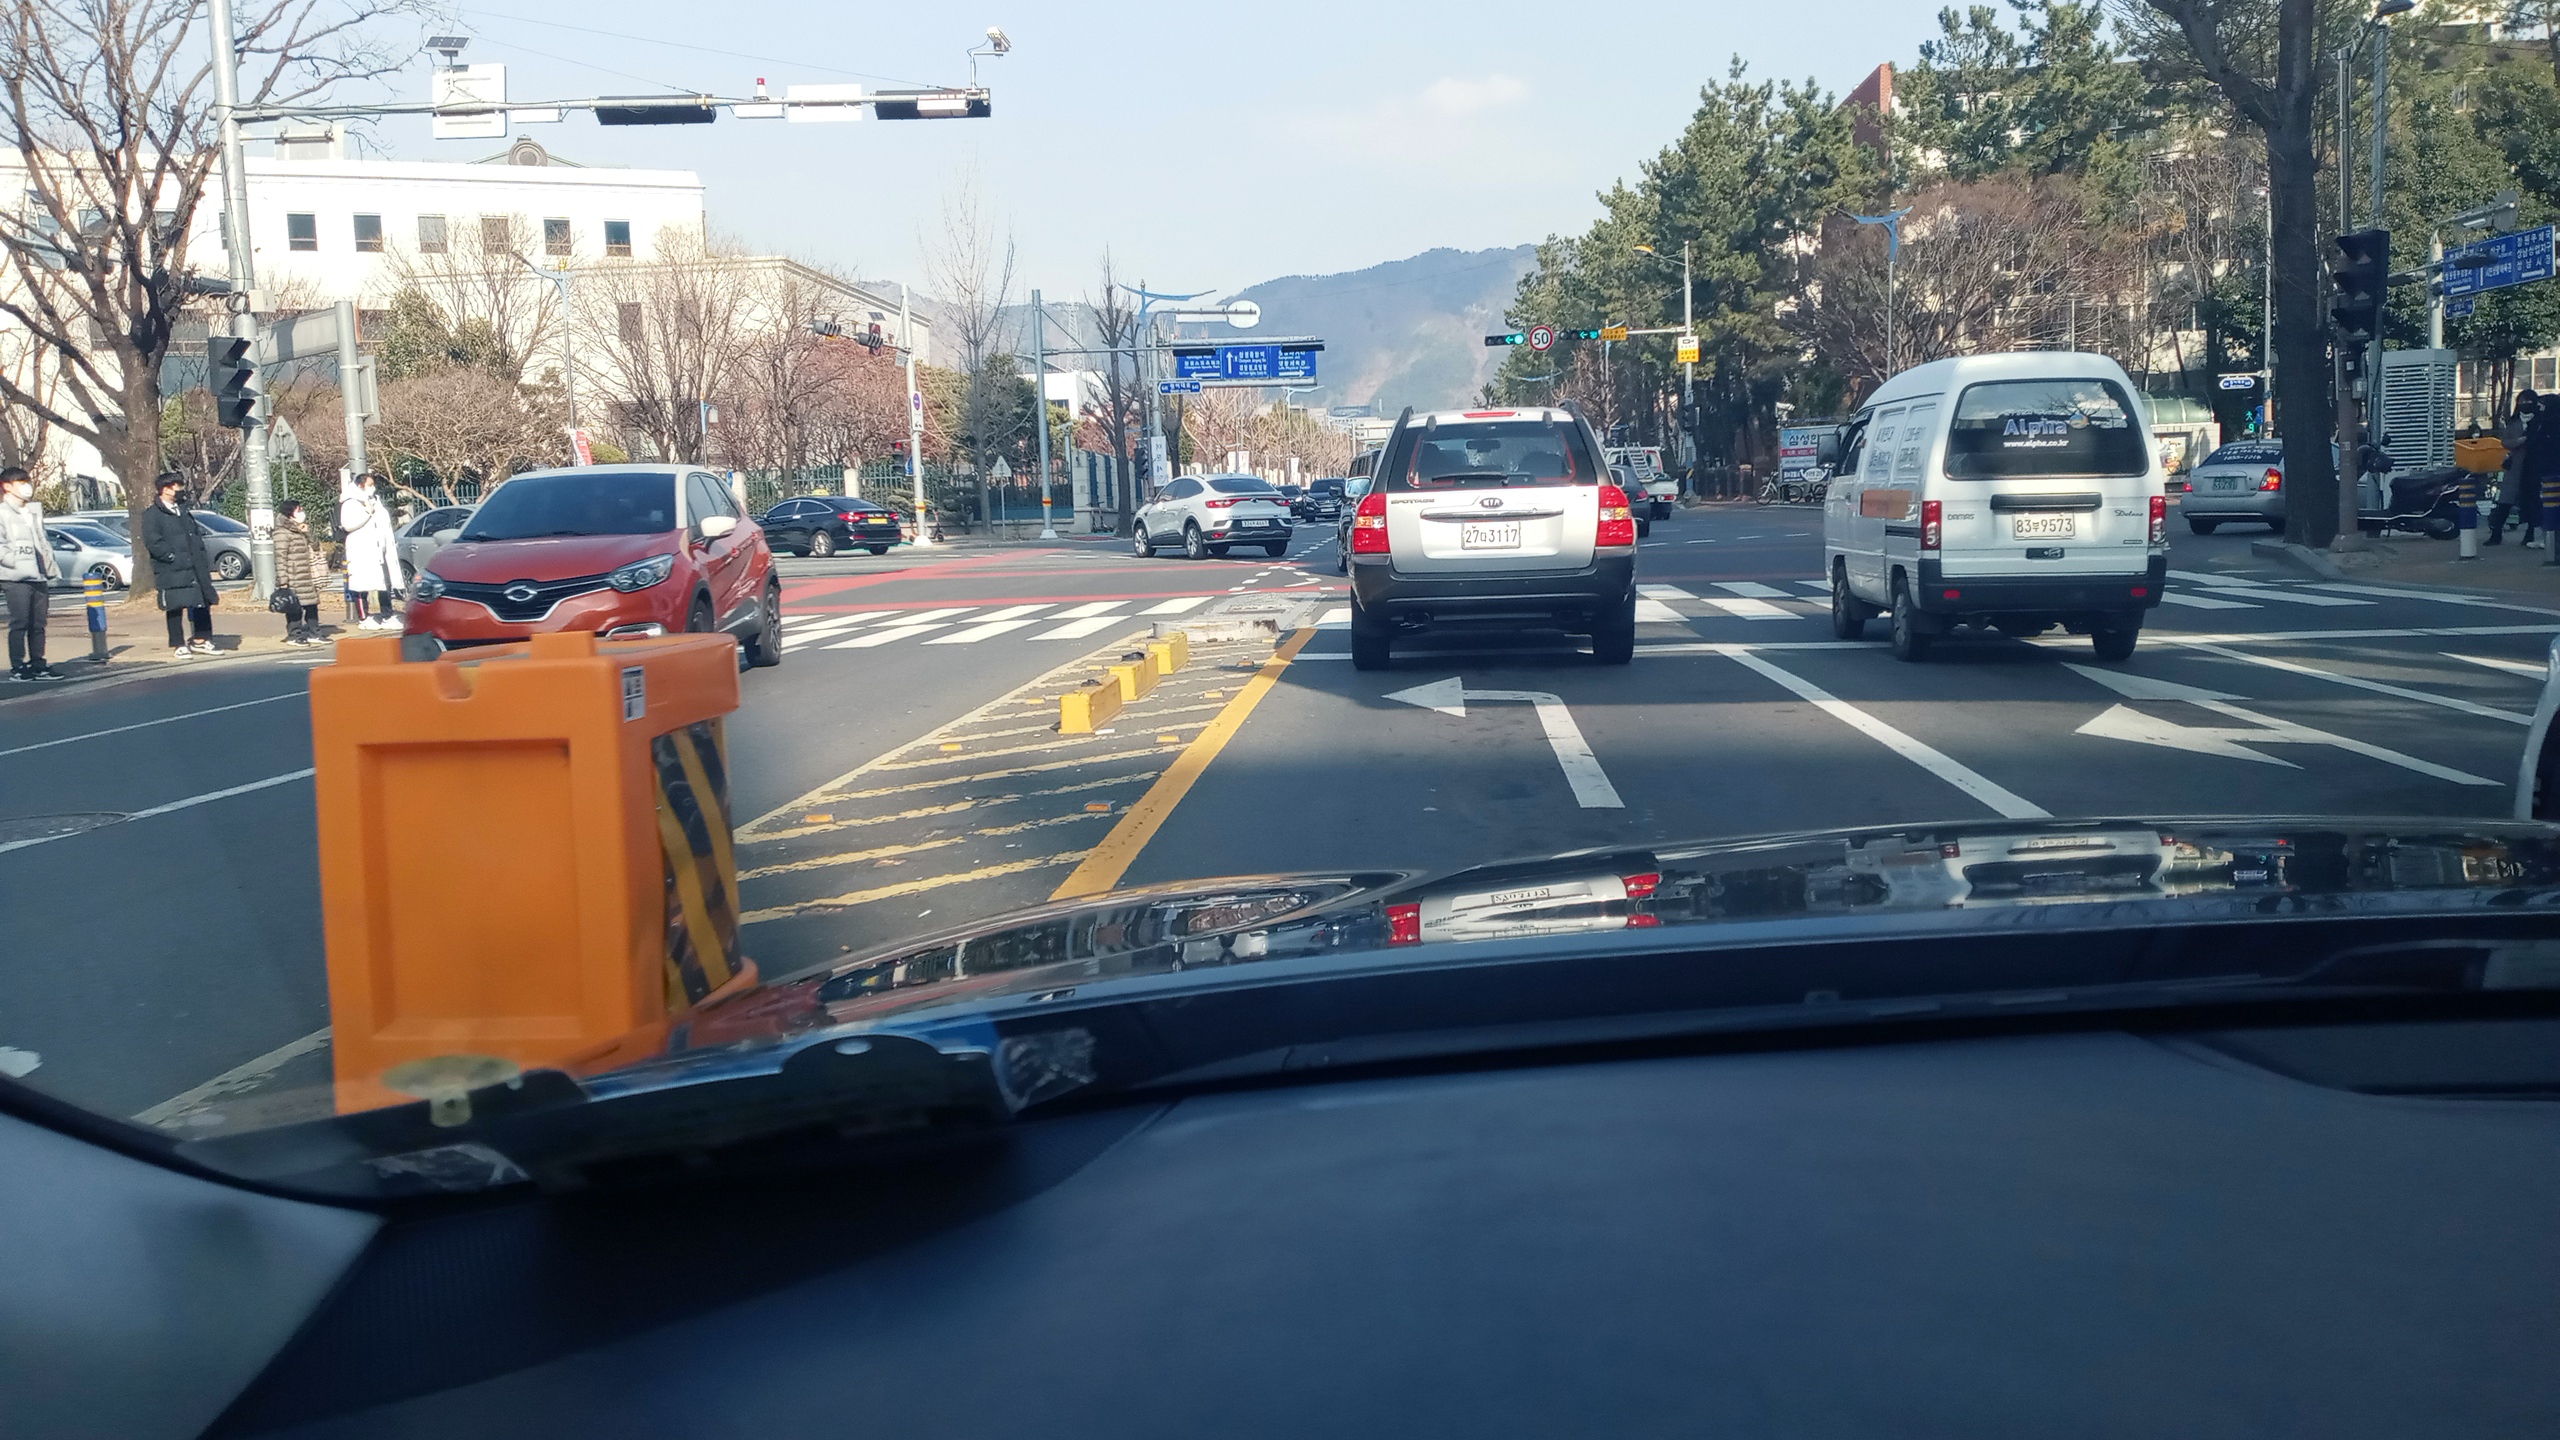 한국은행사거리 도로 중앙선 교통안전봉 불량 재시공 제안  본문  1번째 이미지입니다.